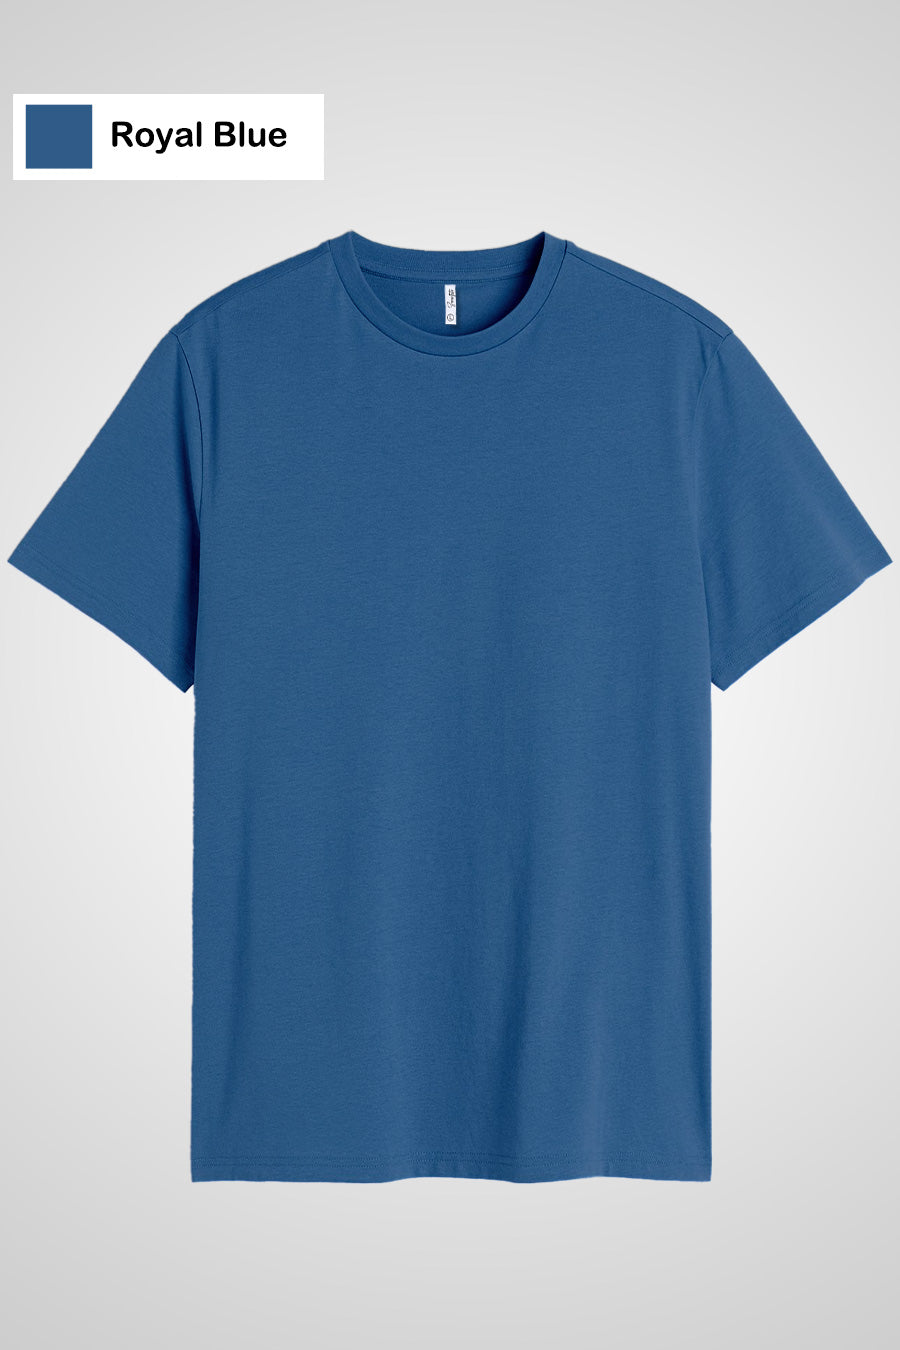 Unisex Royal Blue Round Neck Short Sleeved Plain Men's T-shirt